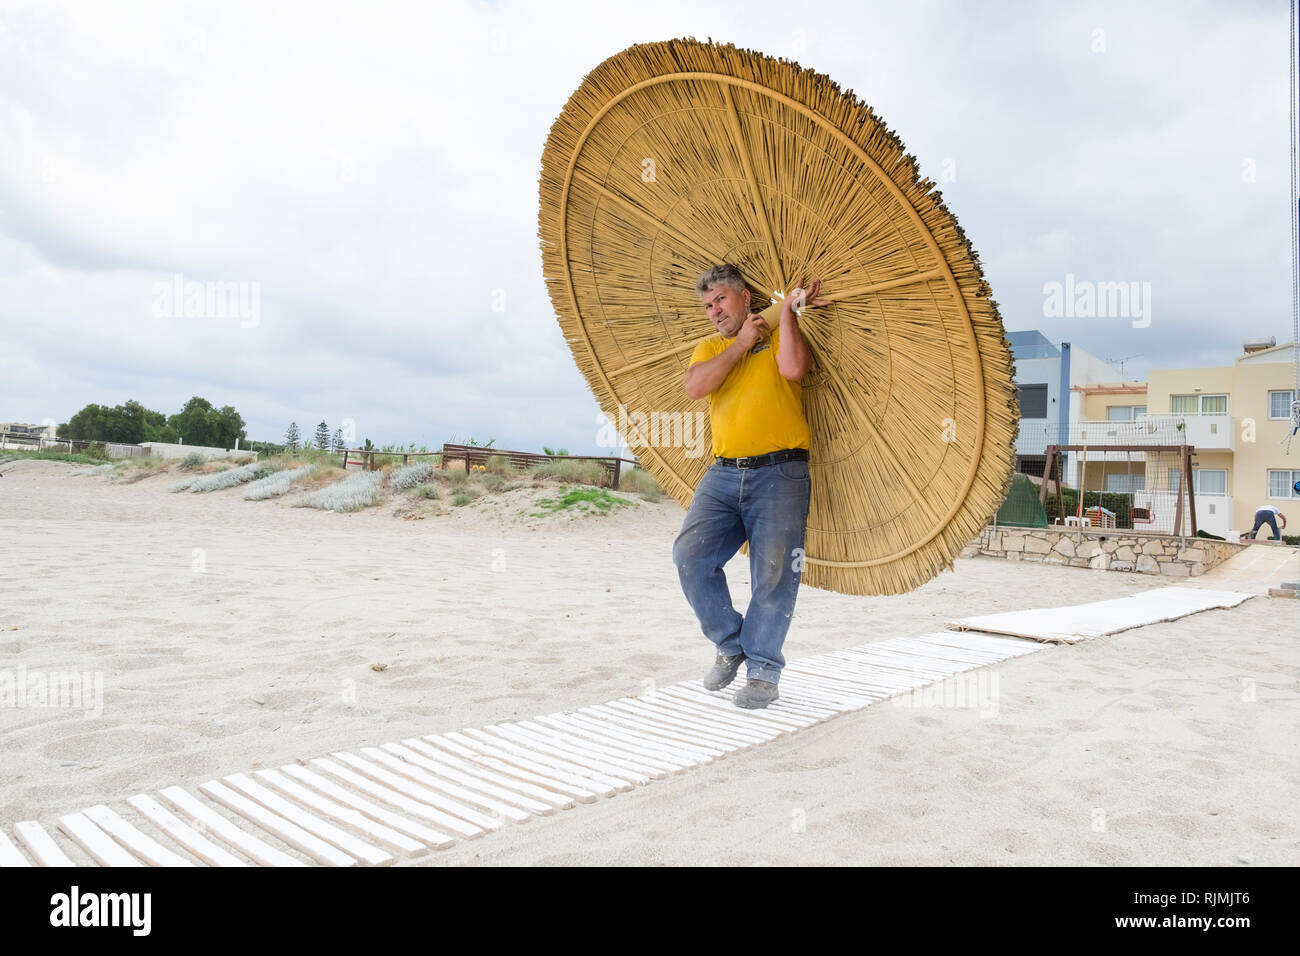 Adelianos Kambos en Creta: El obrero lleva una nueva sombra para la playa Foto de stock